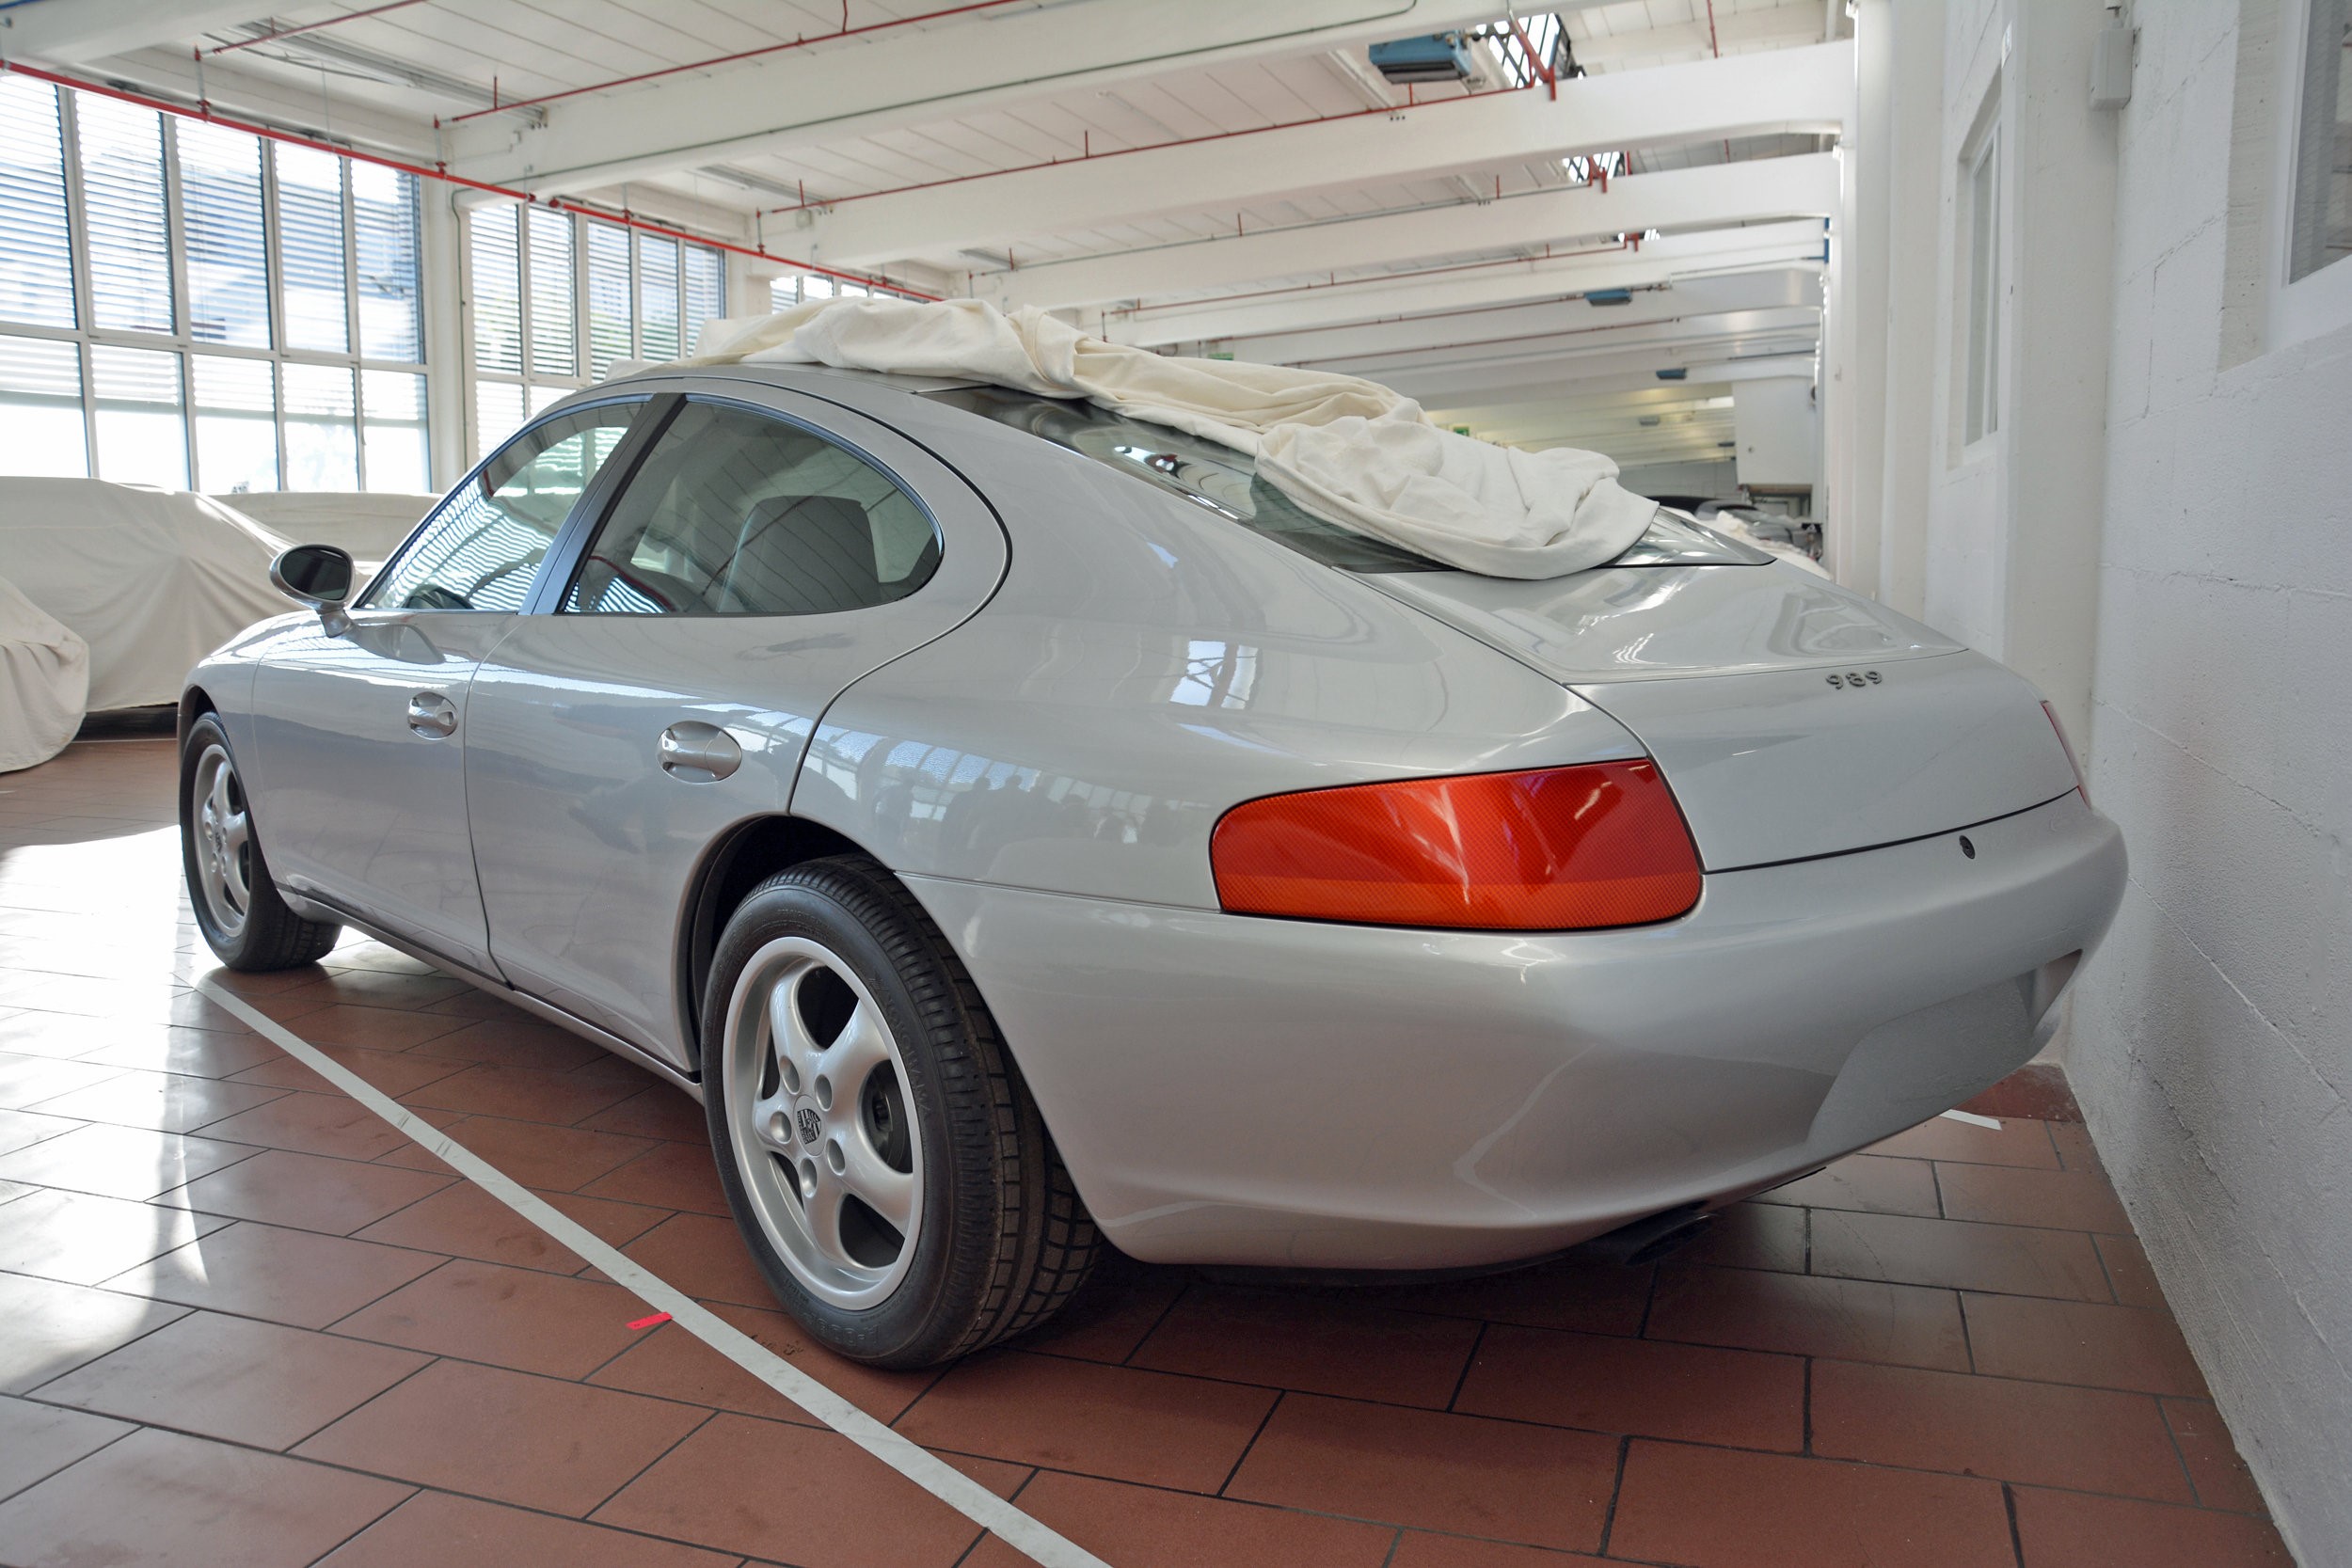 989原型车展示了保时捷在1988年如何构想出911型轿车